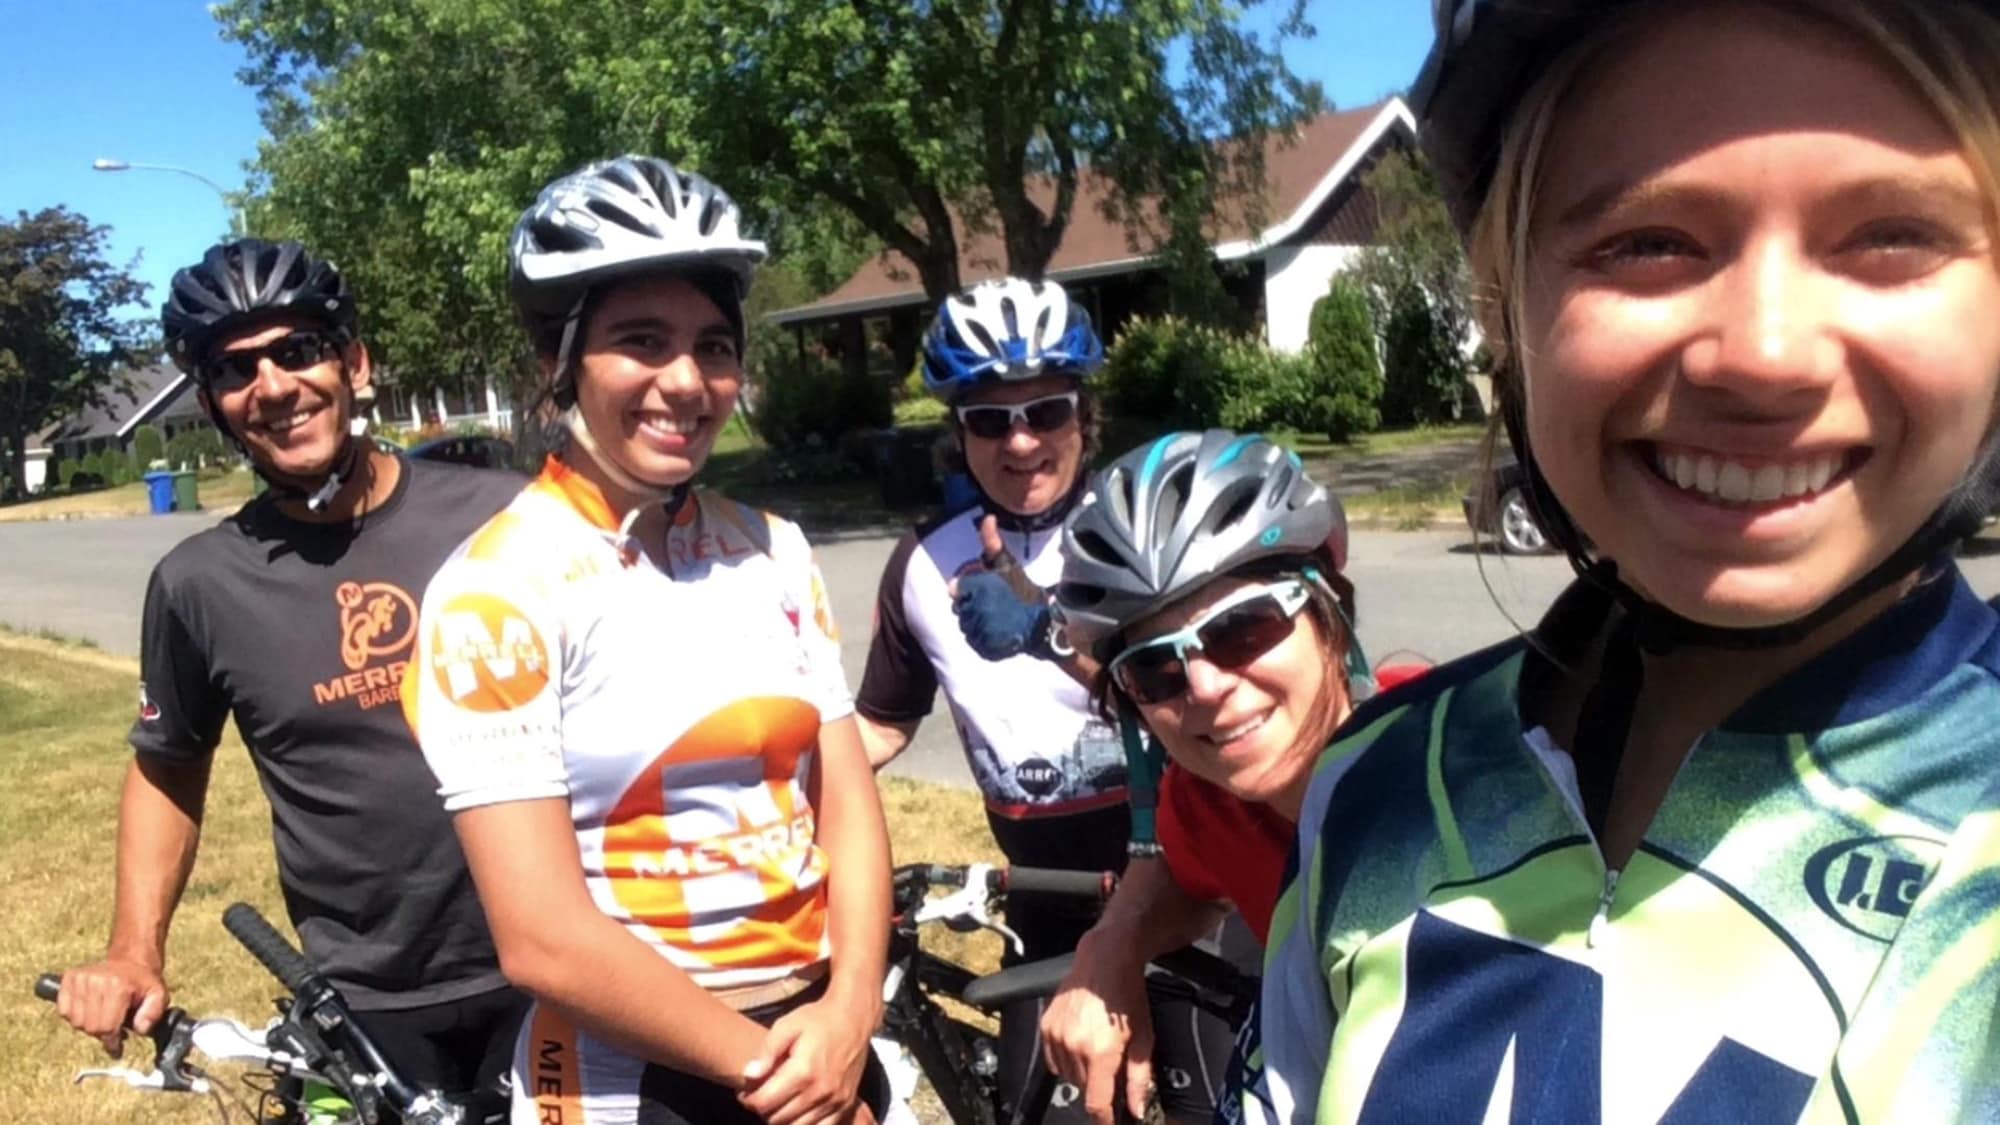 Cinq personnes en vêtements en vélo regardent la caméra en souriant.